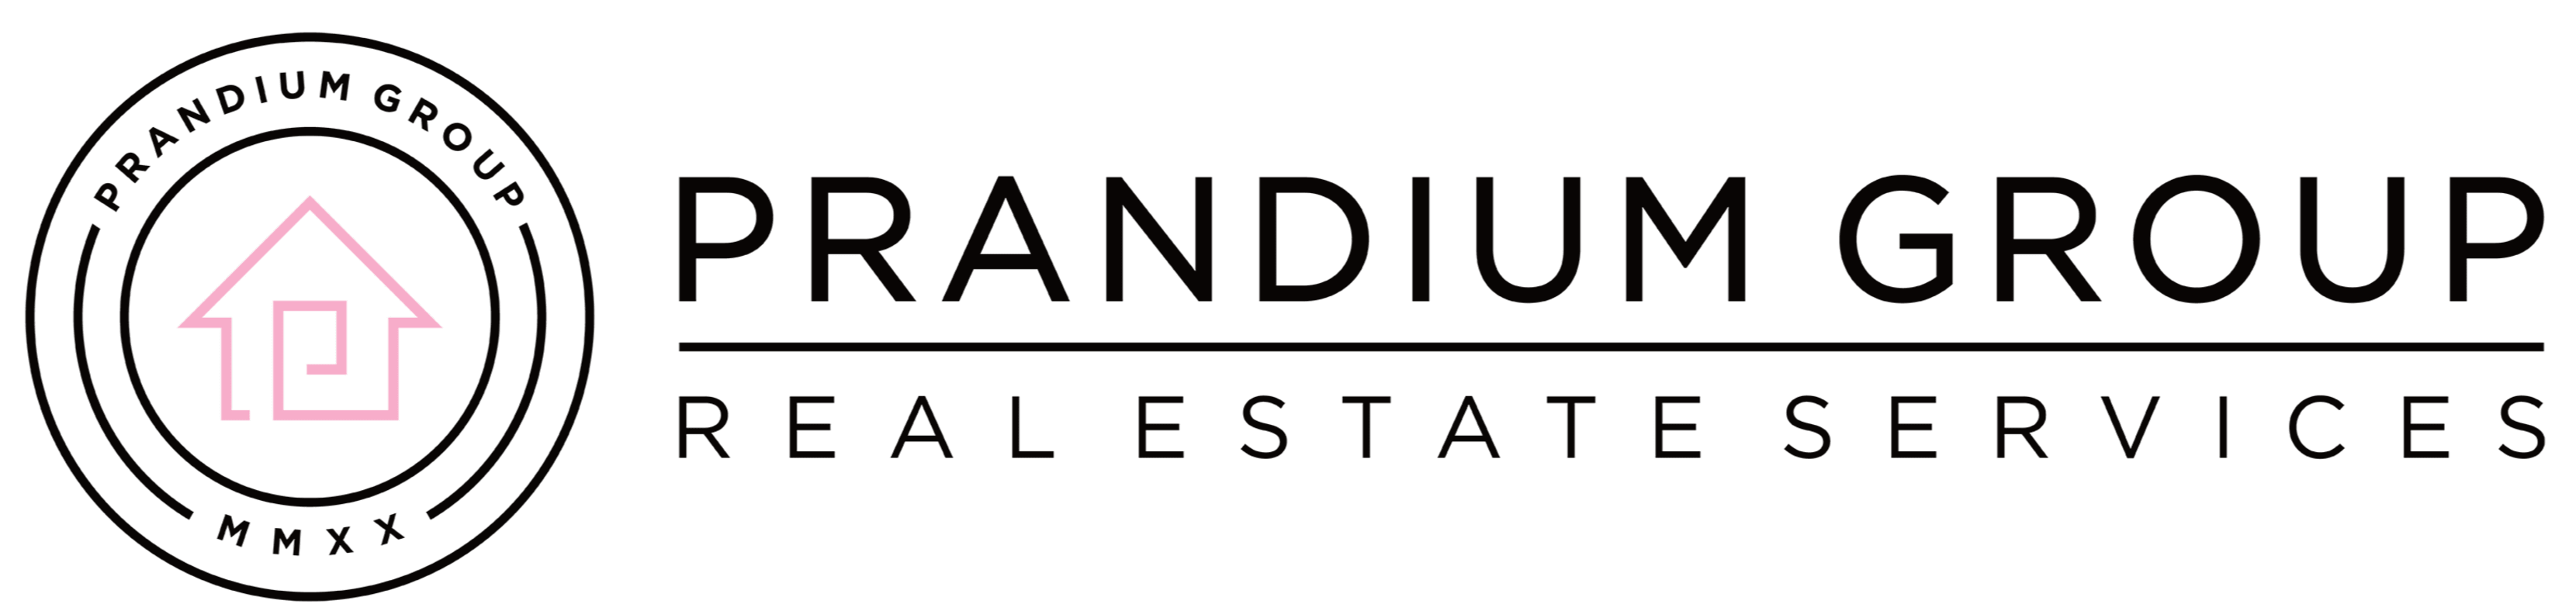 Prandium Group Real Estate